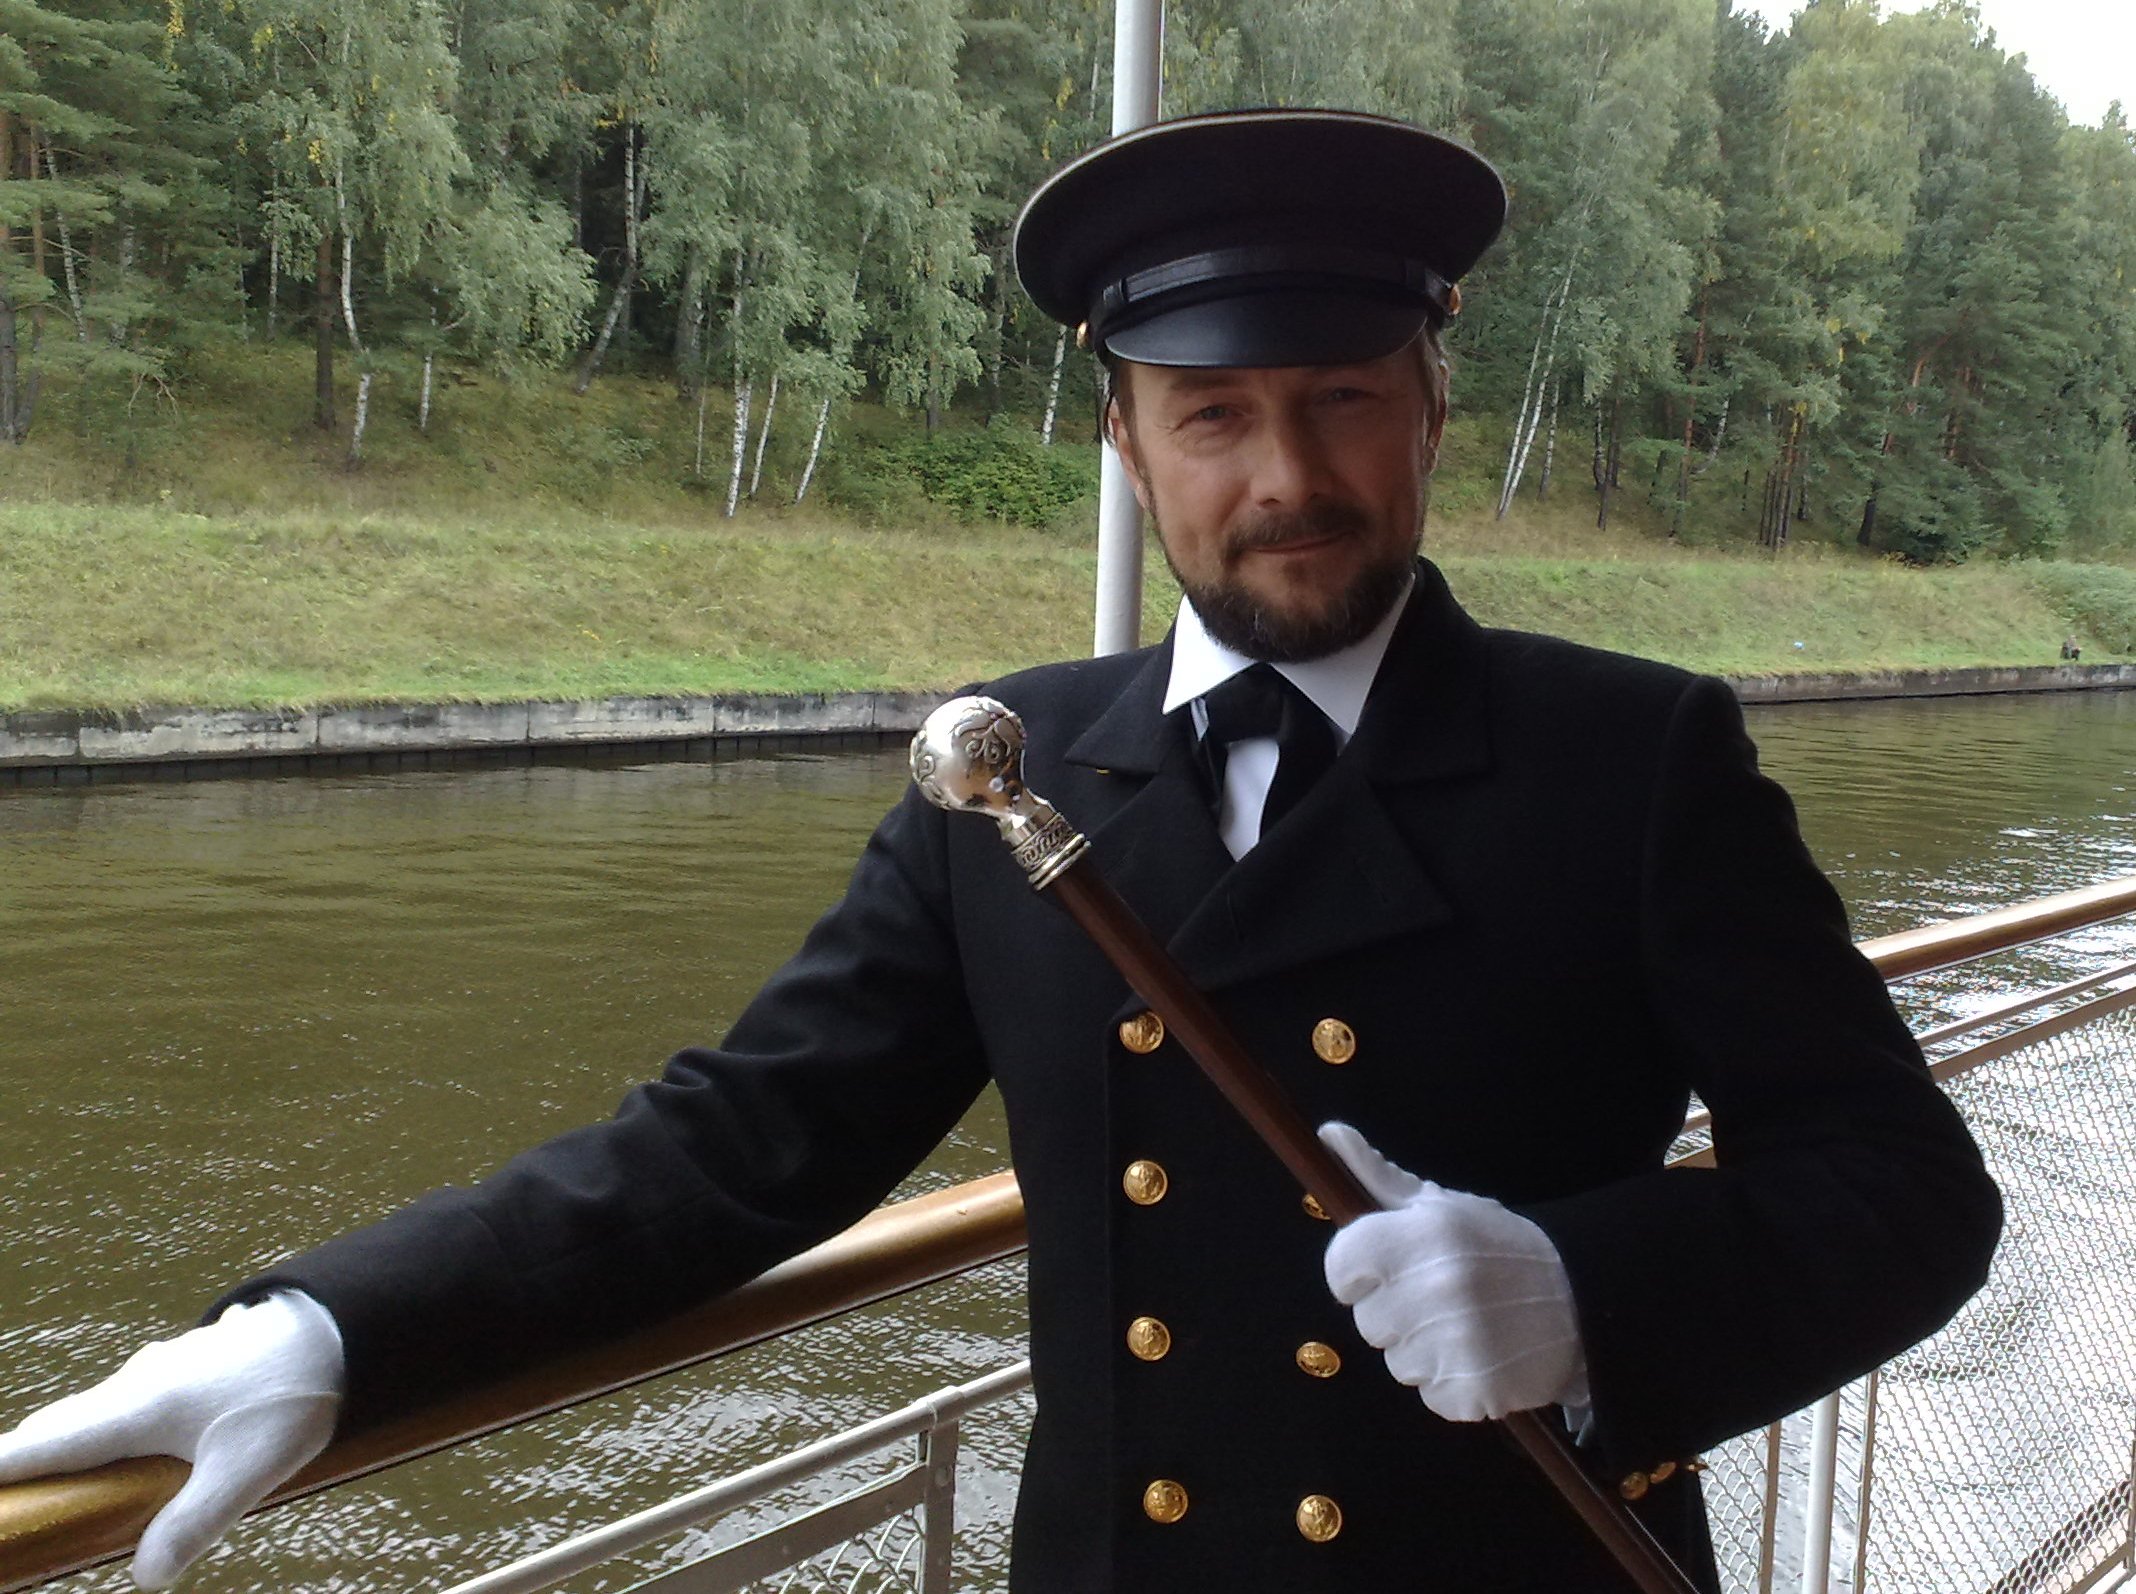 Aleksandr Zamyatin starring as Captain of the Stream Boat in 